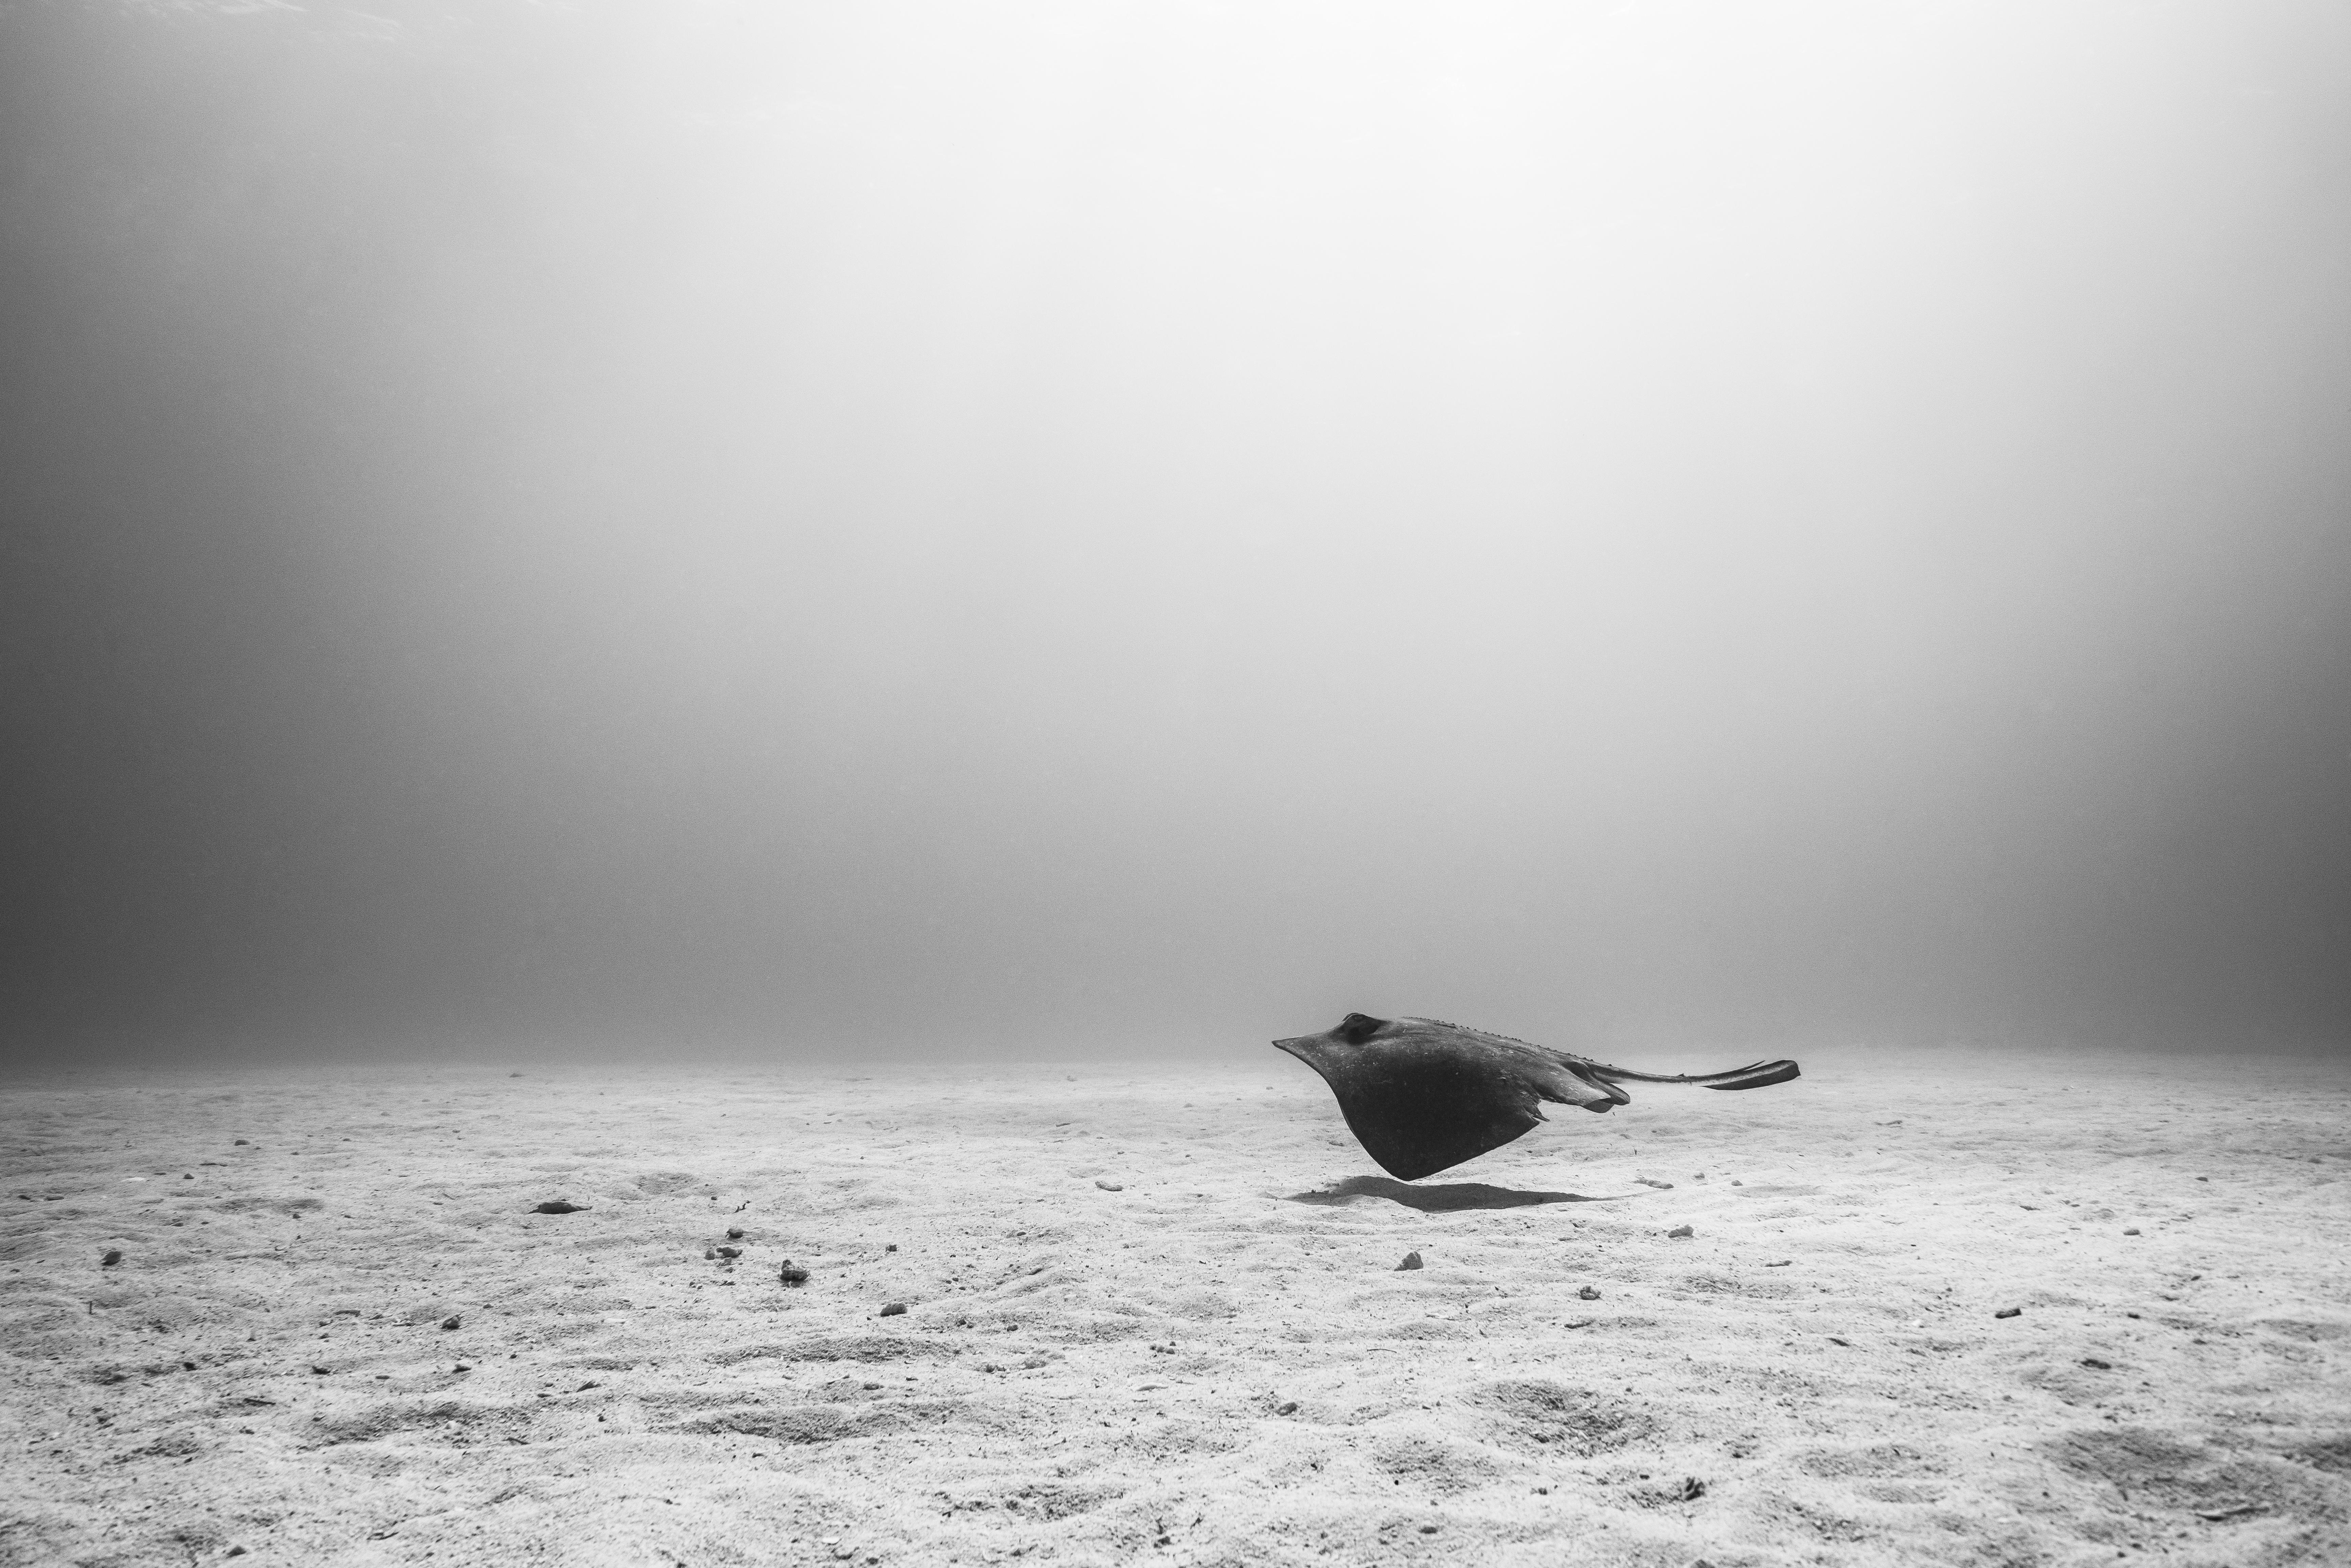 Cristina Mittermeier Black and White Photograph - Glide